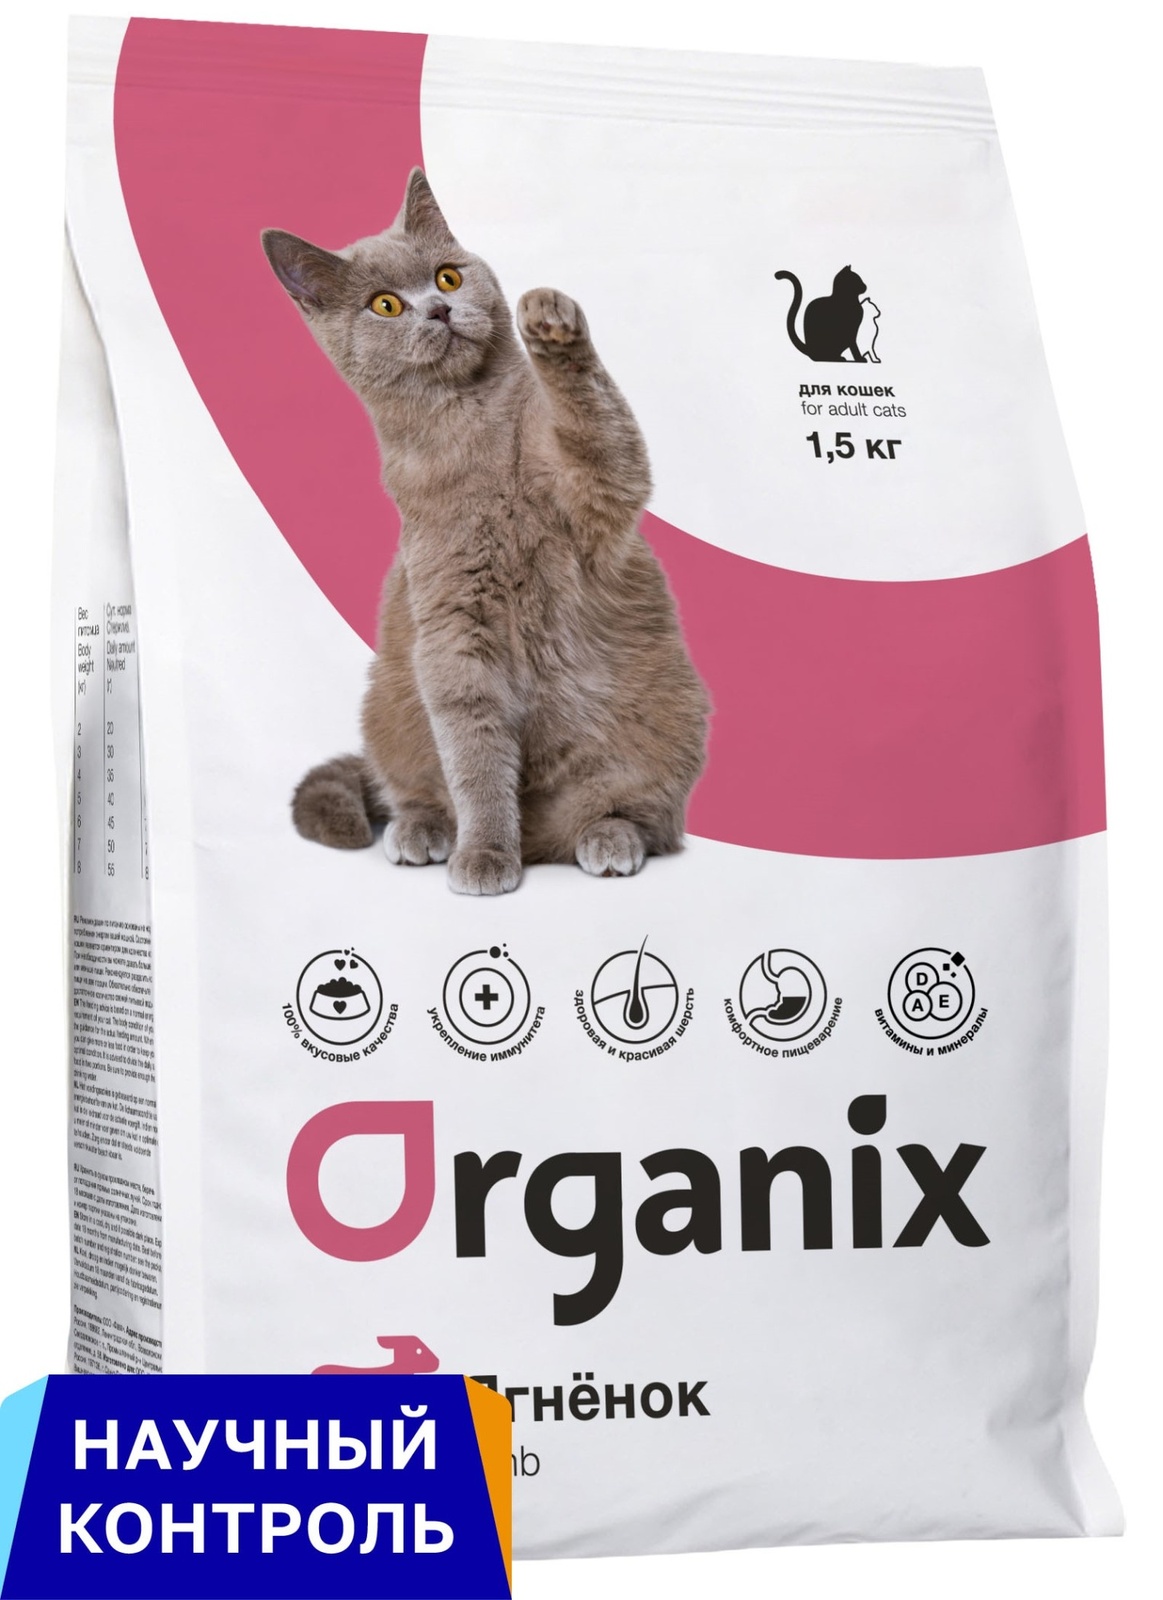 Organix  сухой корм для кошек, с ягненком (1,5 кг) Organix  сухой корм для кошек, с ягненком (1,5 кг) - фото 1